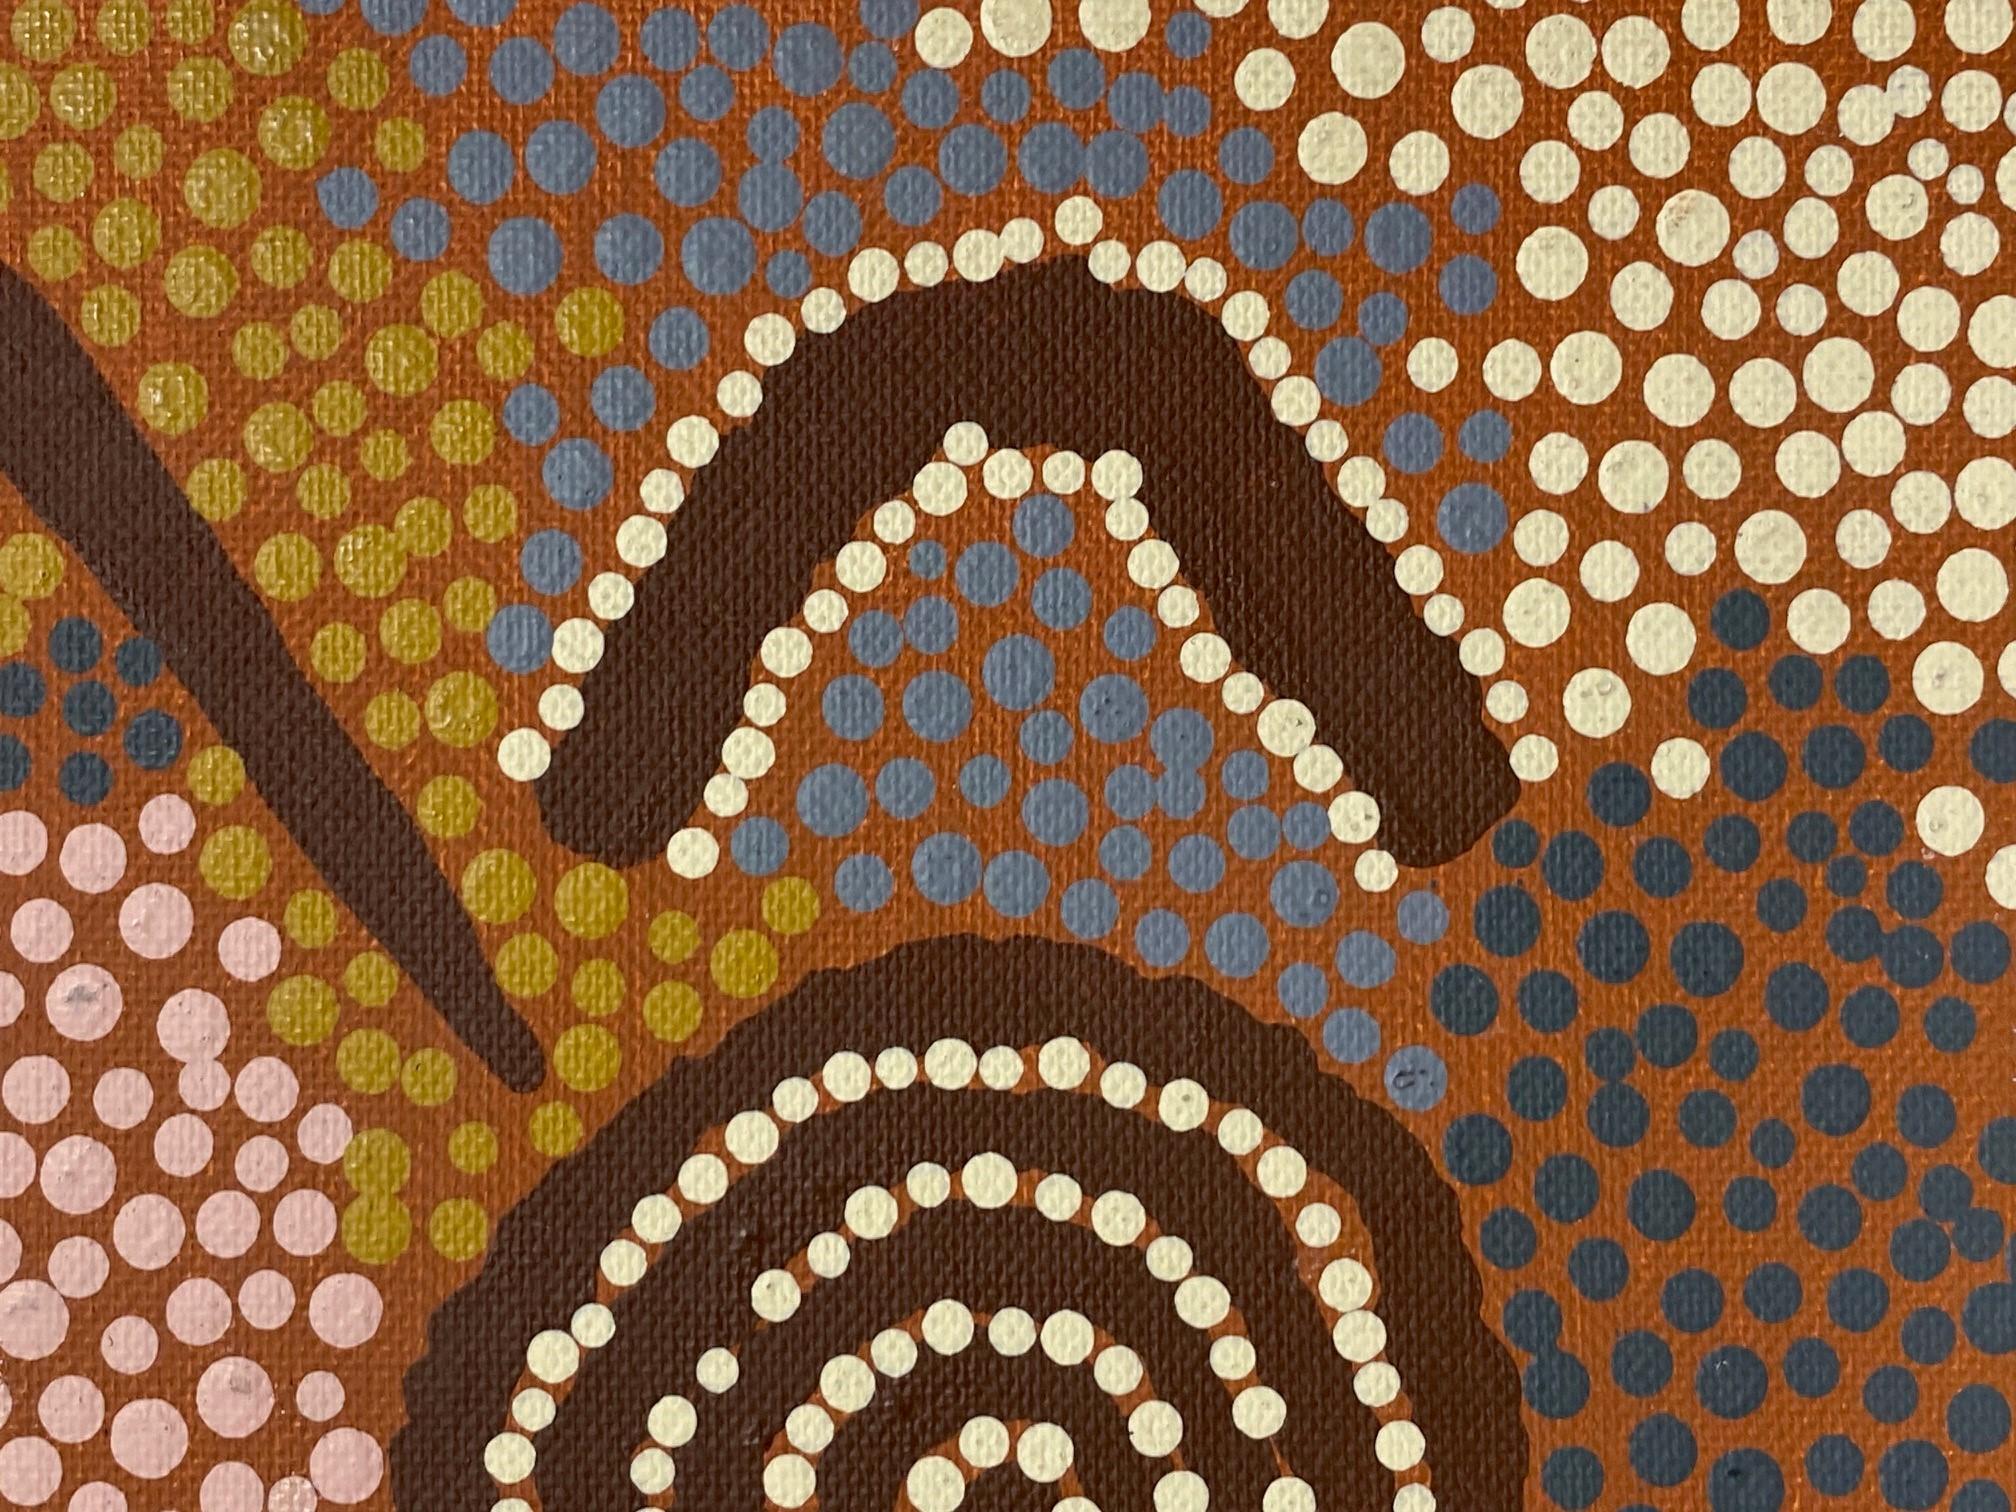 Clifford Possum Tjapaltjarri Signed Indigenous Aboriginal Art Original Painting  In Good Condition For Sale In Studio City, CA